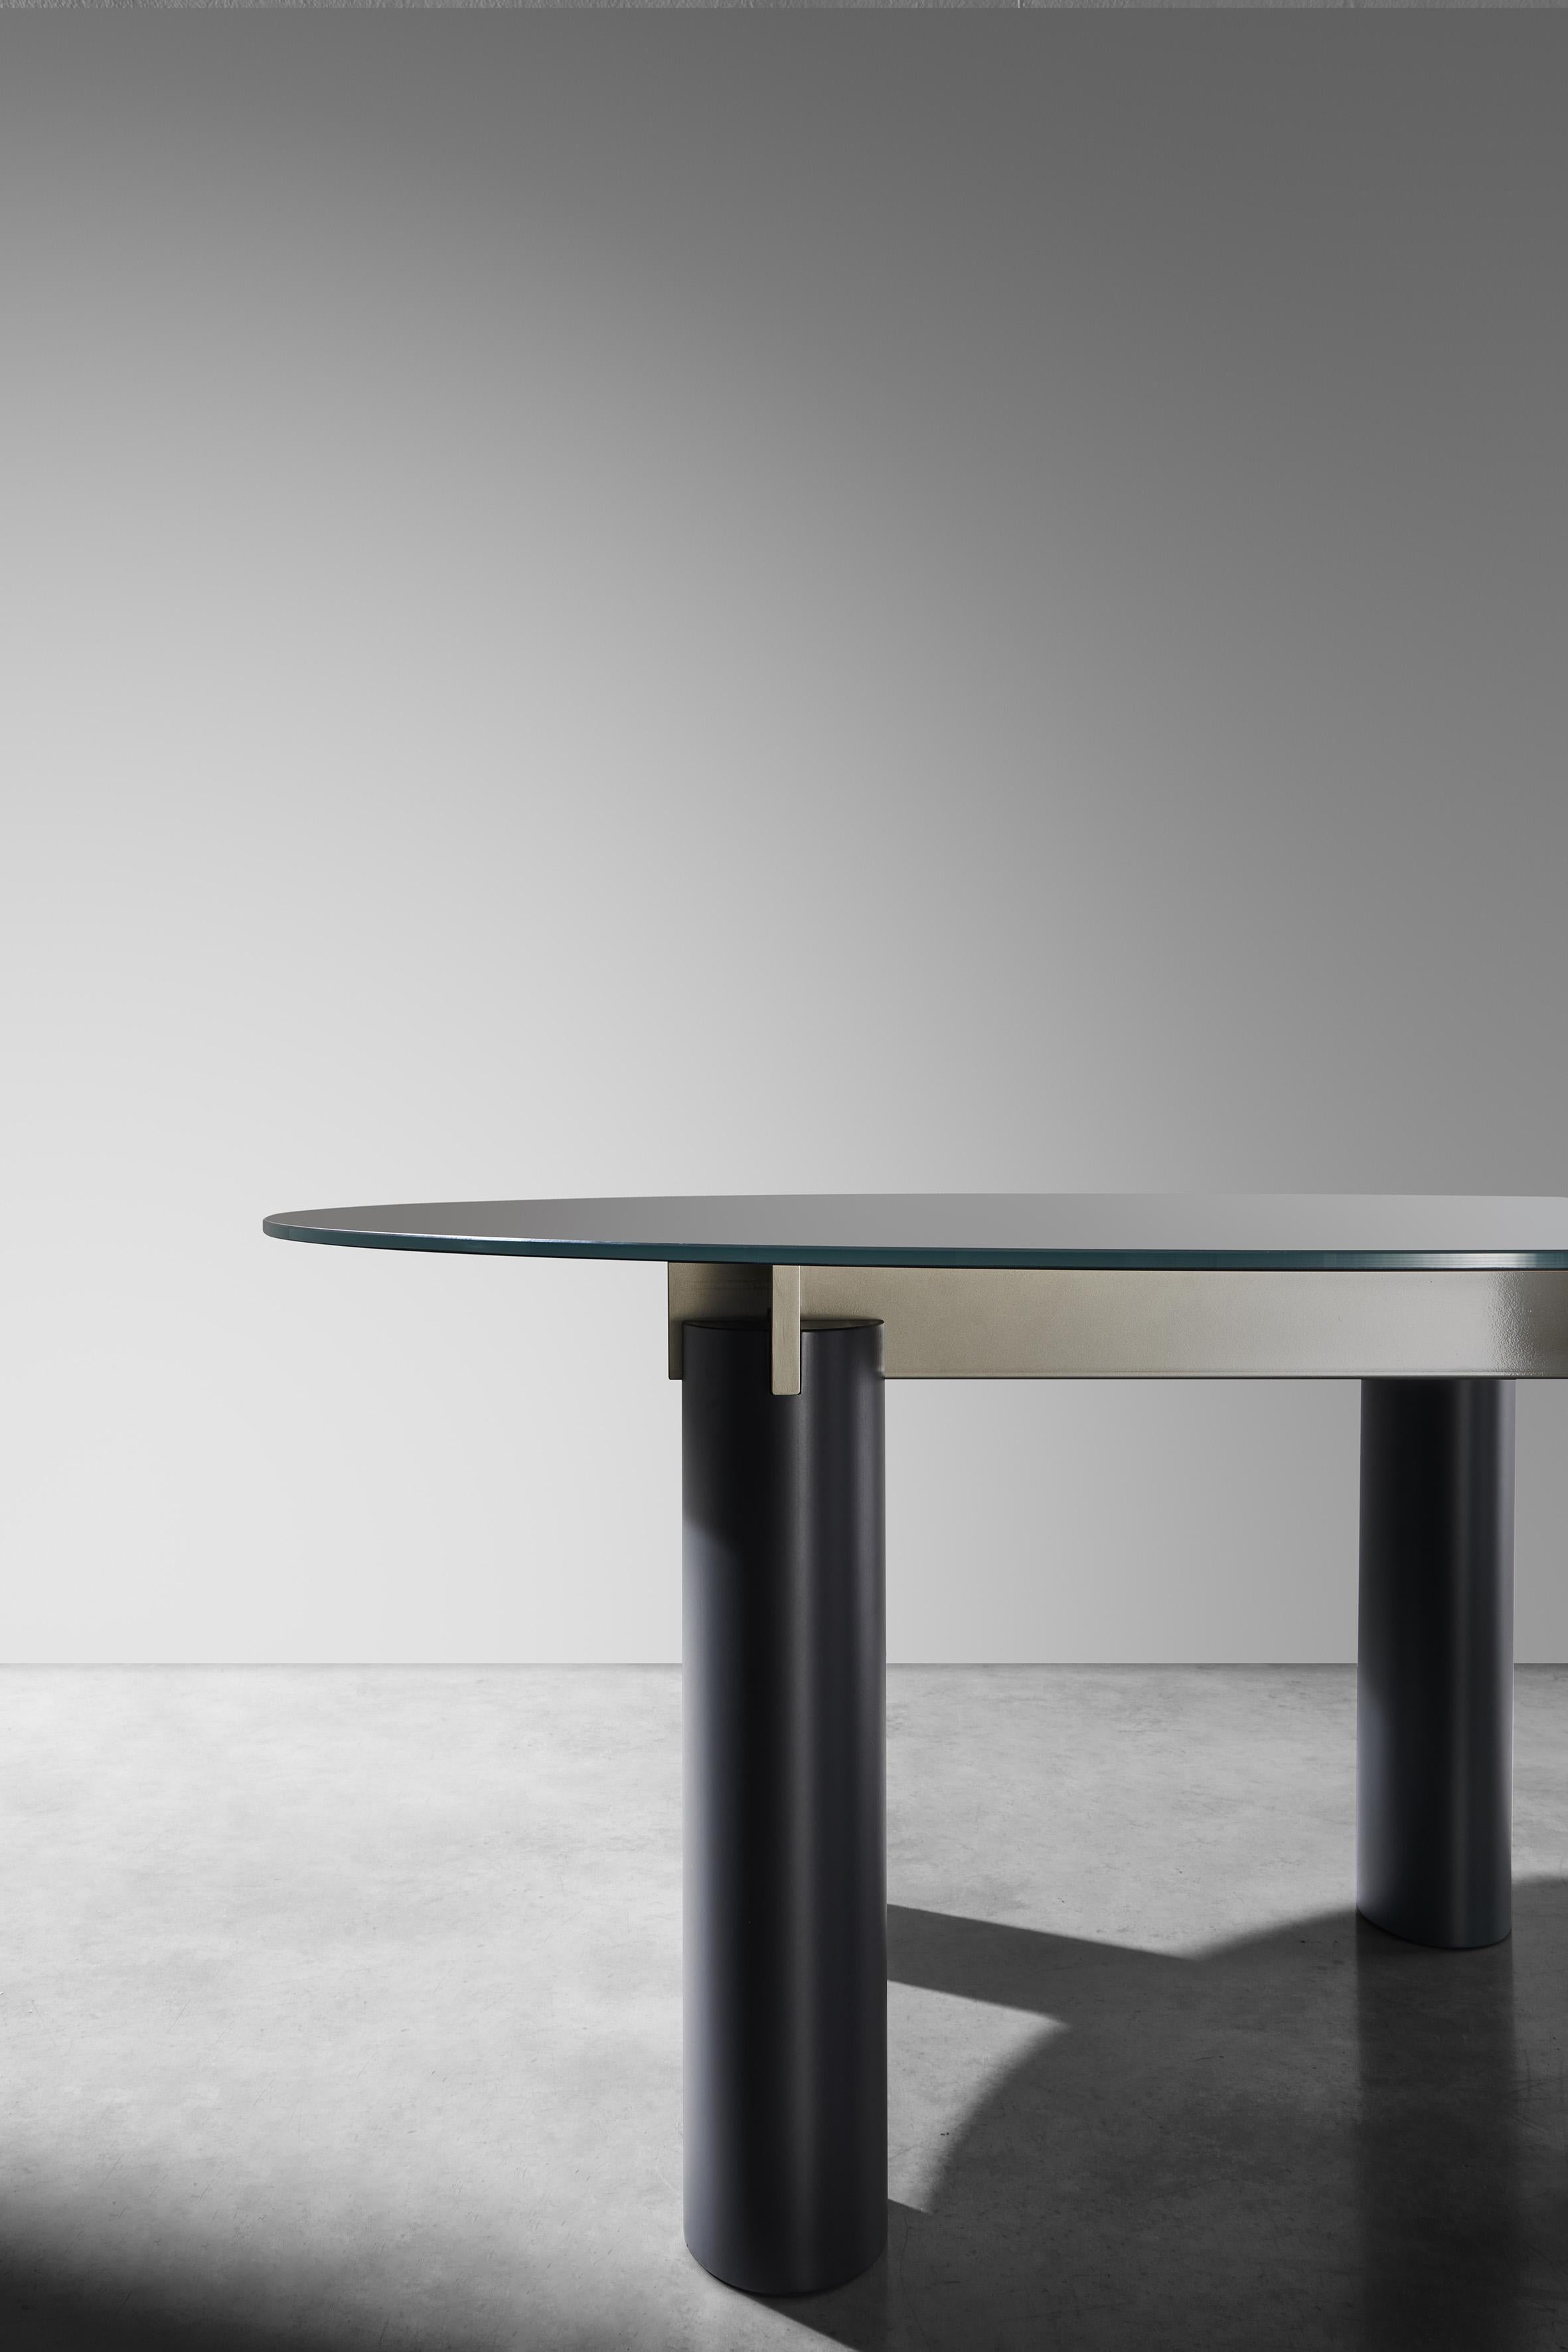 Ovaler Tisch mit fester Platte, erhältlich in den folgenden Varianten: Feinsteinzeug 6 mm kombiniert mit bronzefarbenem Glas 6 mm; Glas 12 mm lackiert; Platte aus weißem Carrara-Marmor 20 mm. Füße aus lackiertem MDF-Holz. Gestell aus glänzend